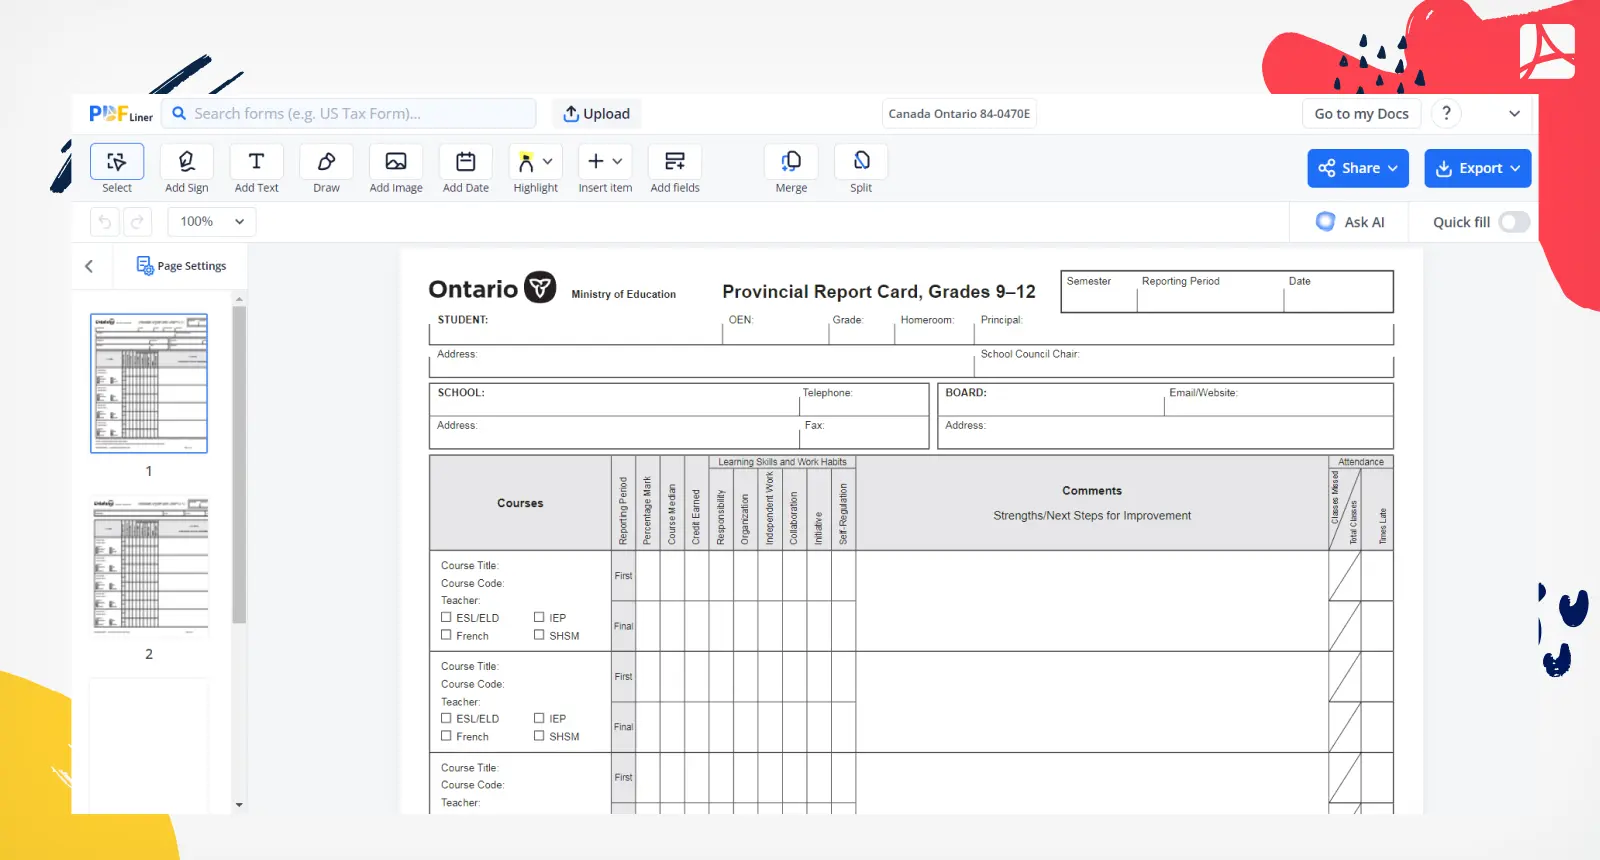 Canada Ontario 84-0470E Form Screenshot